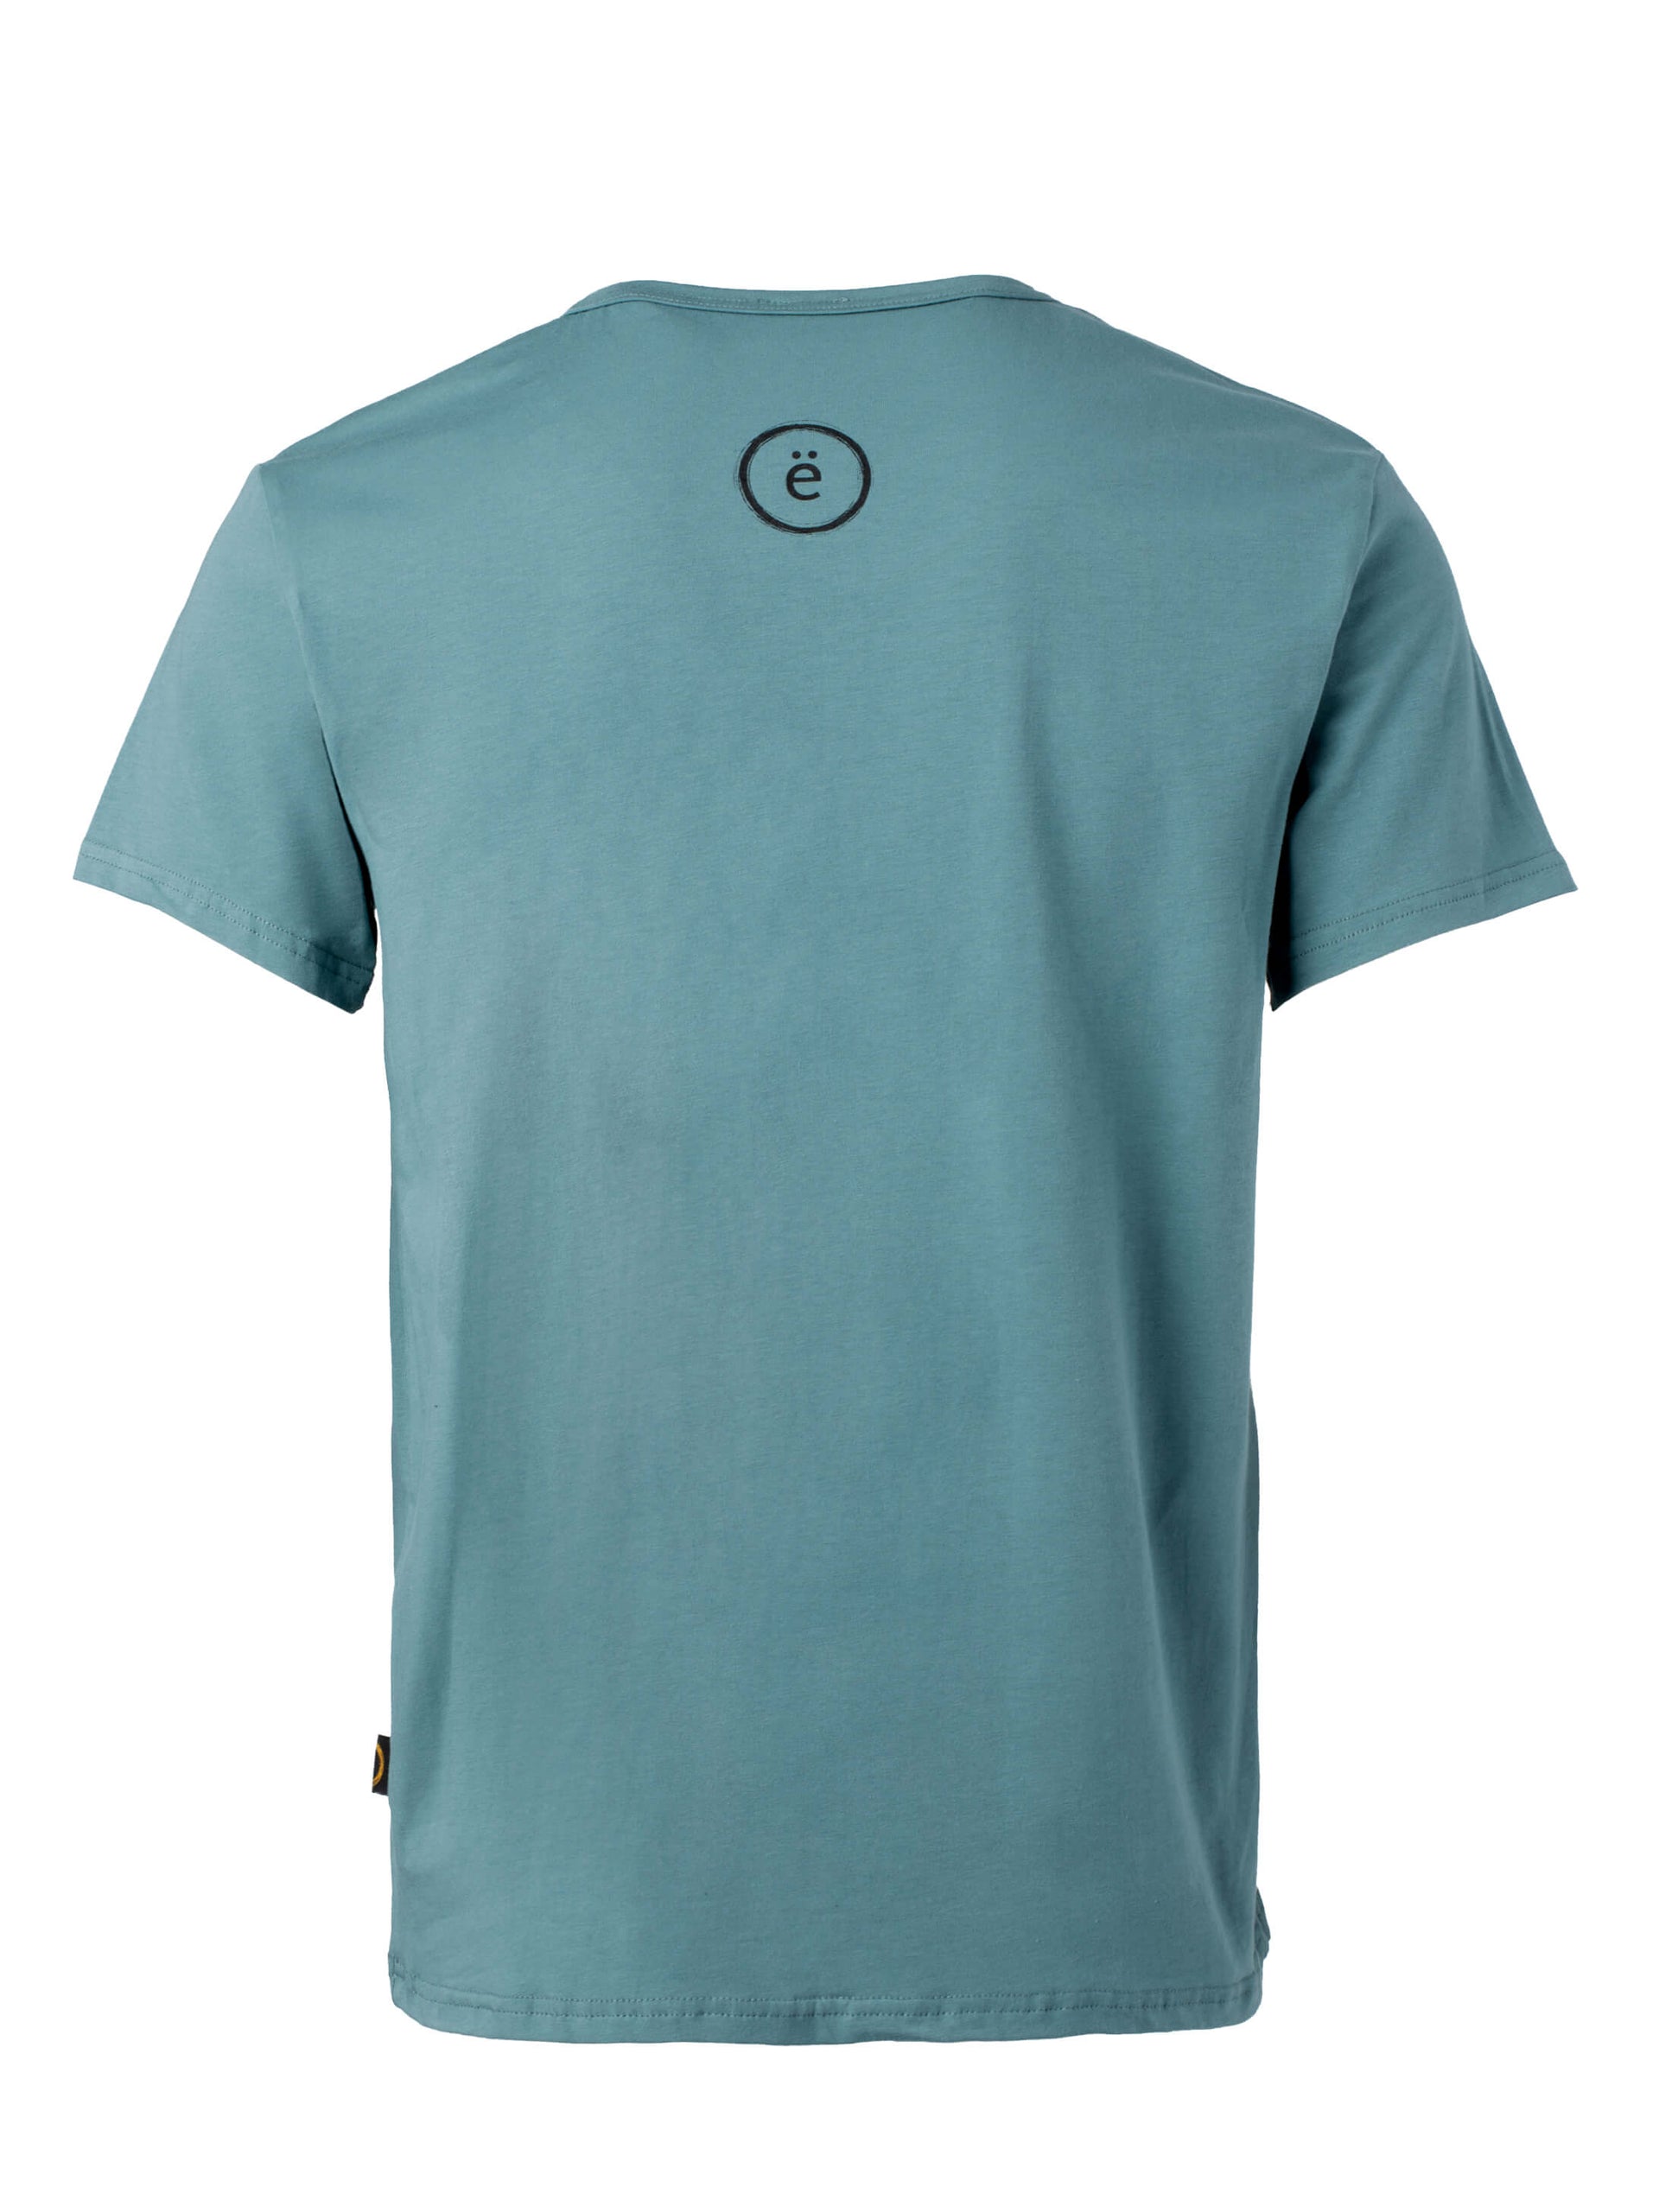 T-shirt-UNISEXE chapitaine-Coton bio-bleu-ghost dos-FC10